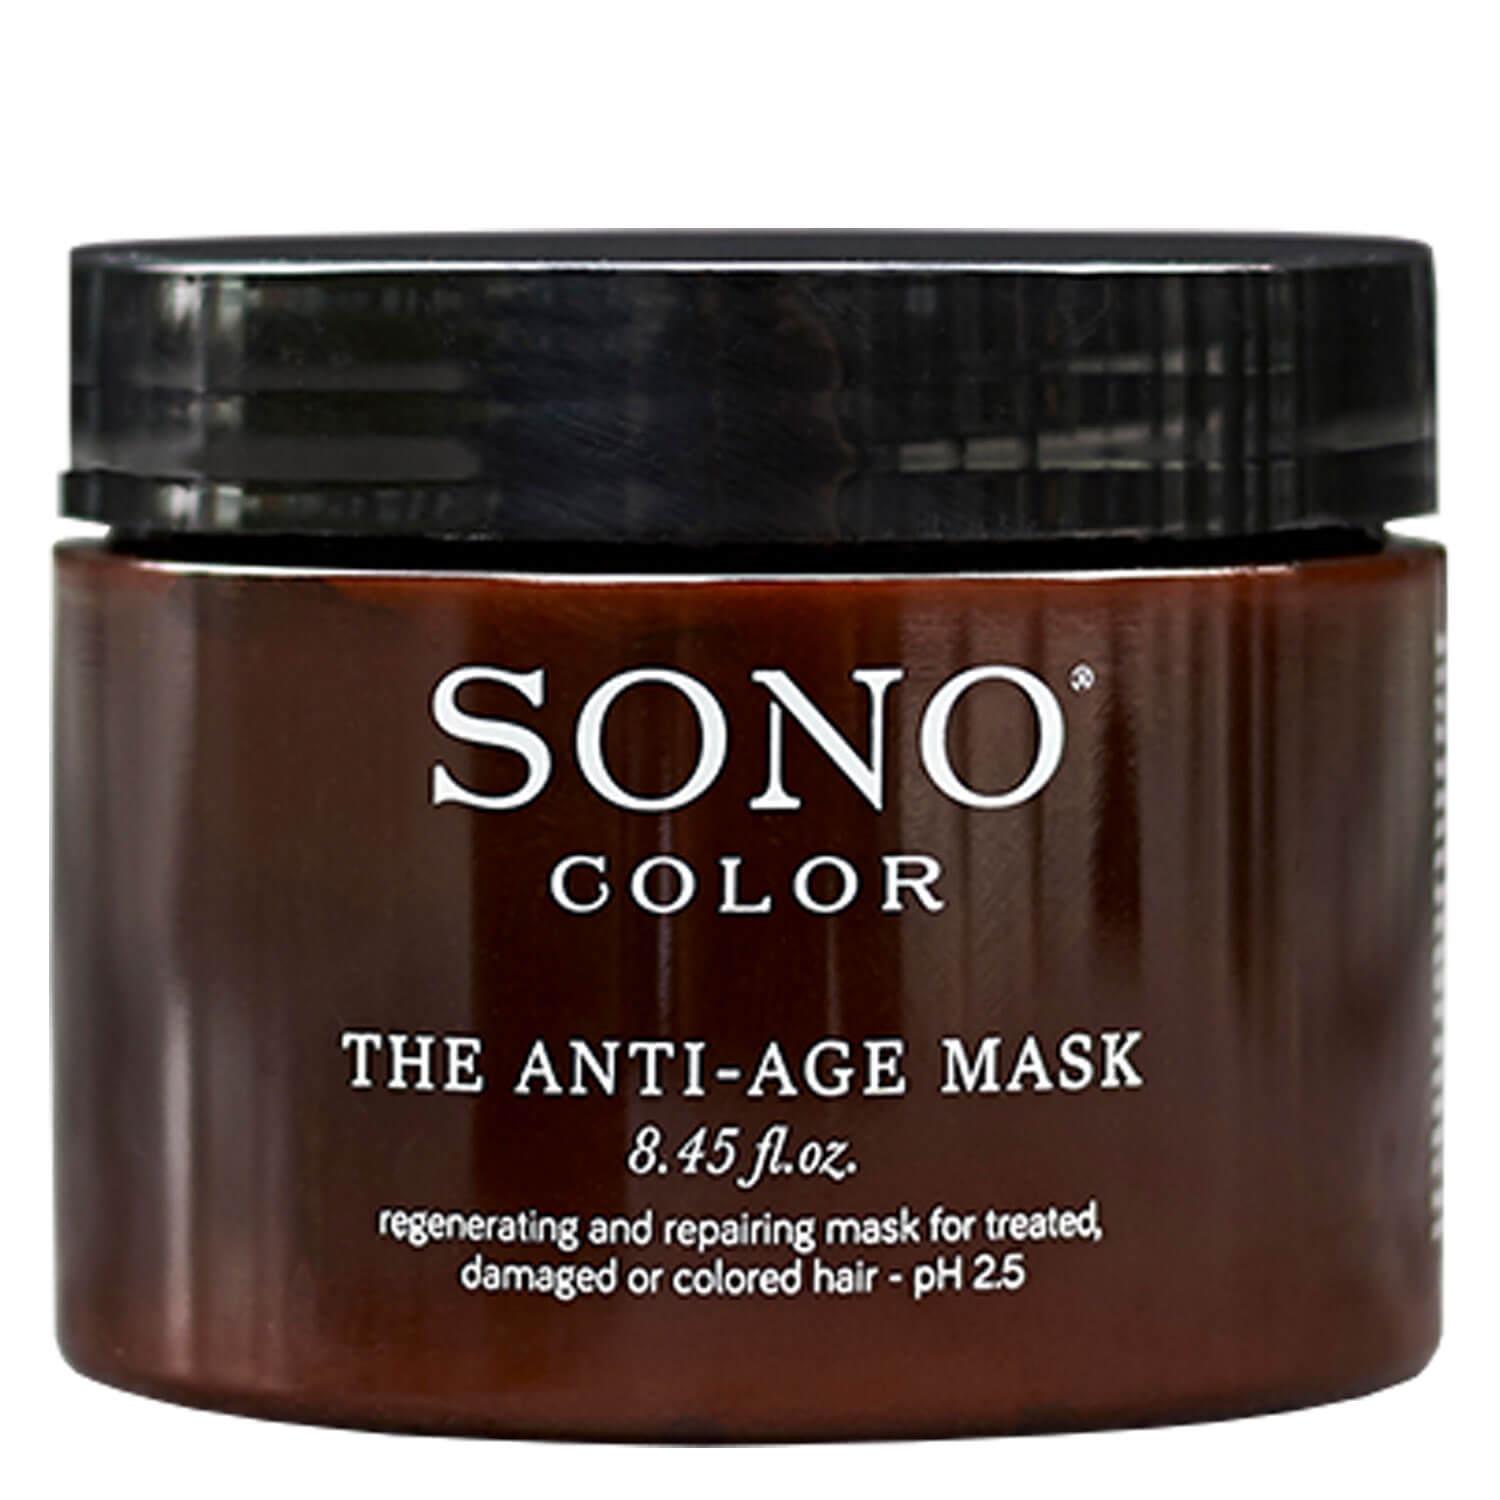 SONO Color - The Anti-Age Mask